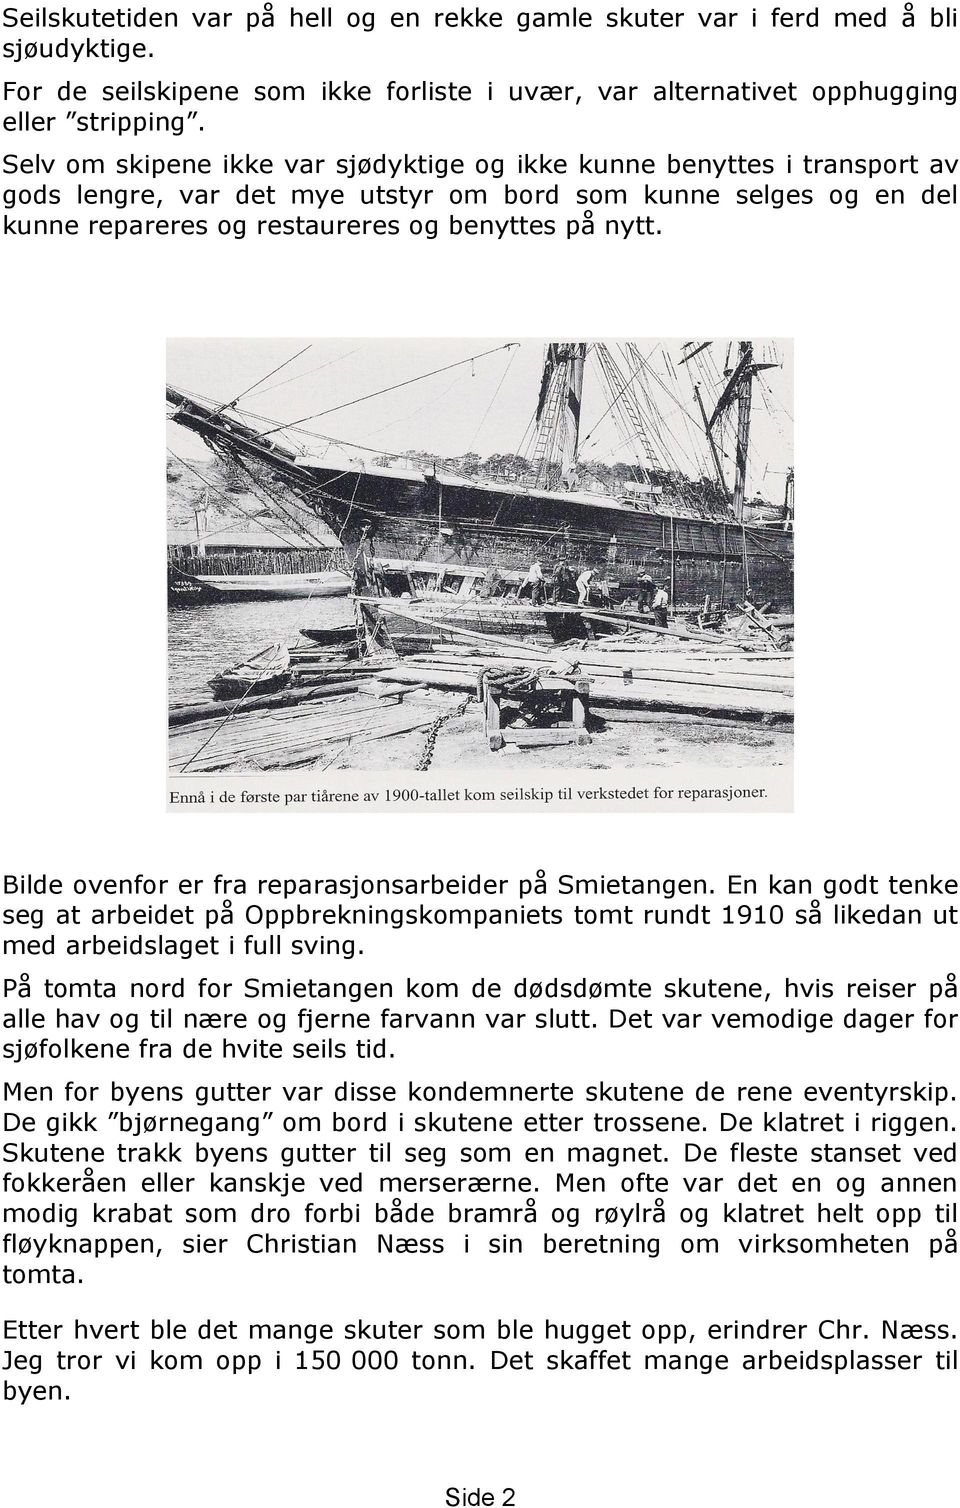 Bilde ovenfor er fra reparasjonsarbeider på Smietangen. En kan godt tenke seg at arbeidet på Oppbrekningskompaniets tomt rundt 1910 så likedan ut med arbeidslaget i full sving.